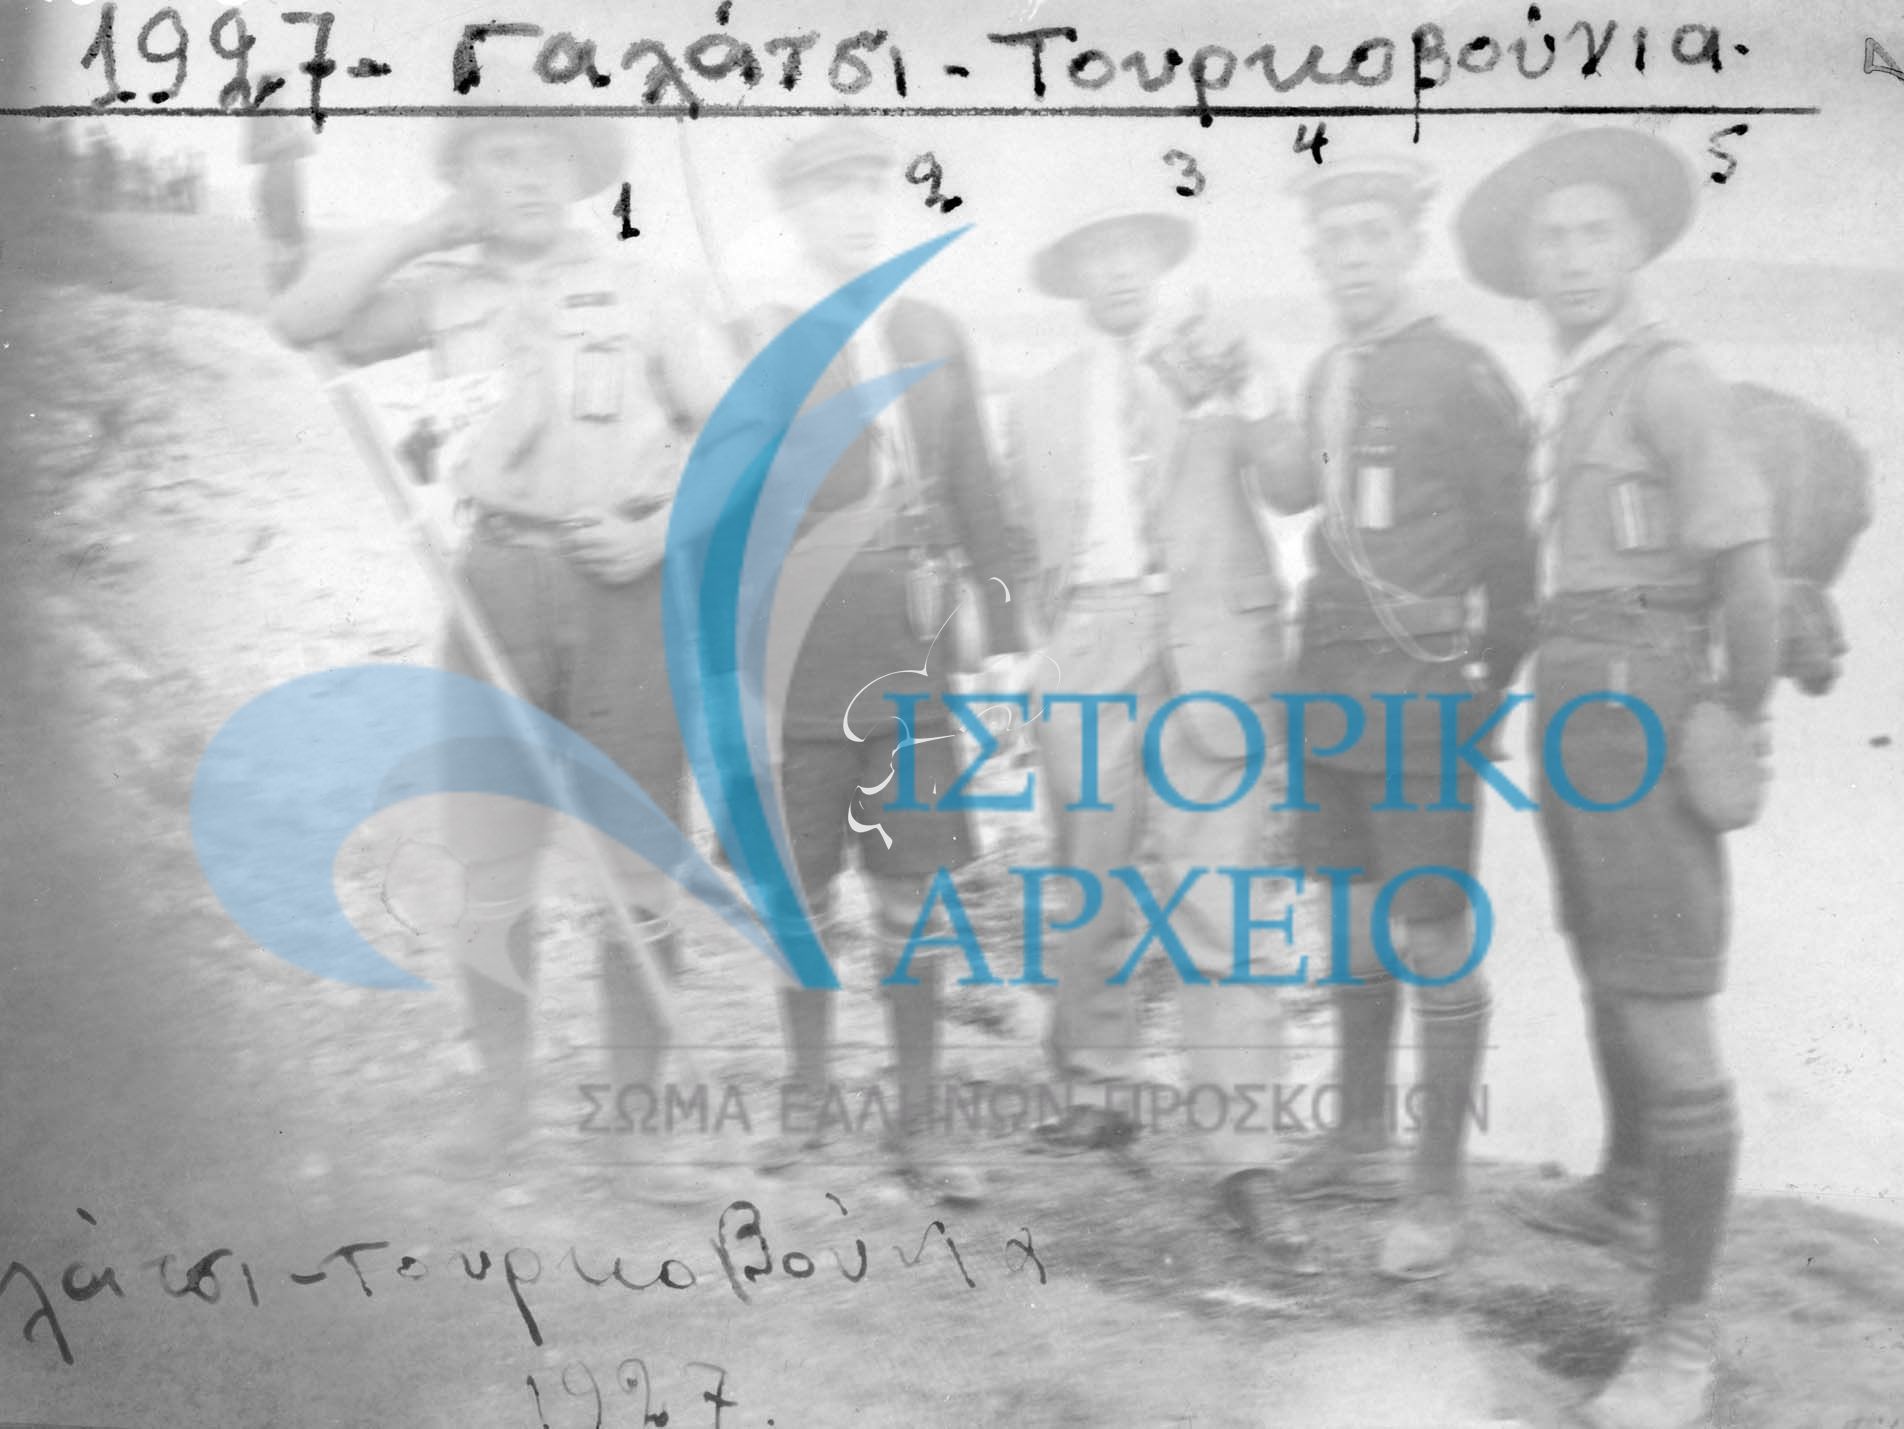 Πρόσκοποι της Κοκκινιάς Πειραιά το 1927 σε εκδρομή στο Γαλάτσι - Τουρκοβούνια. Διακρίνονται: Τερκεσίδης Αλεξ, Λουίζος Στέφανος, Γεώργιος Θεολογίδης, Αρβανιτόπουλος Αδαμάντιος.